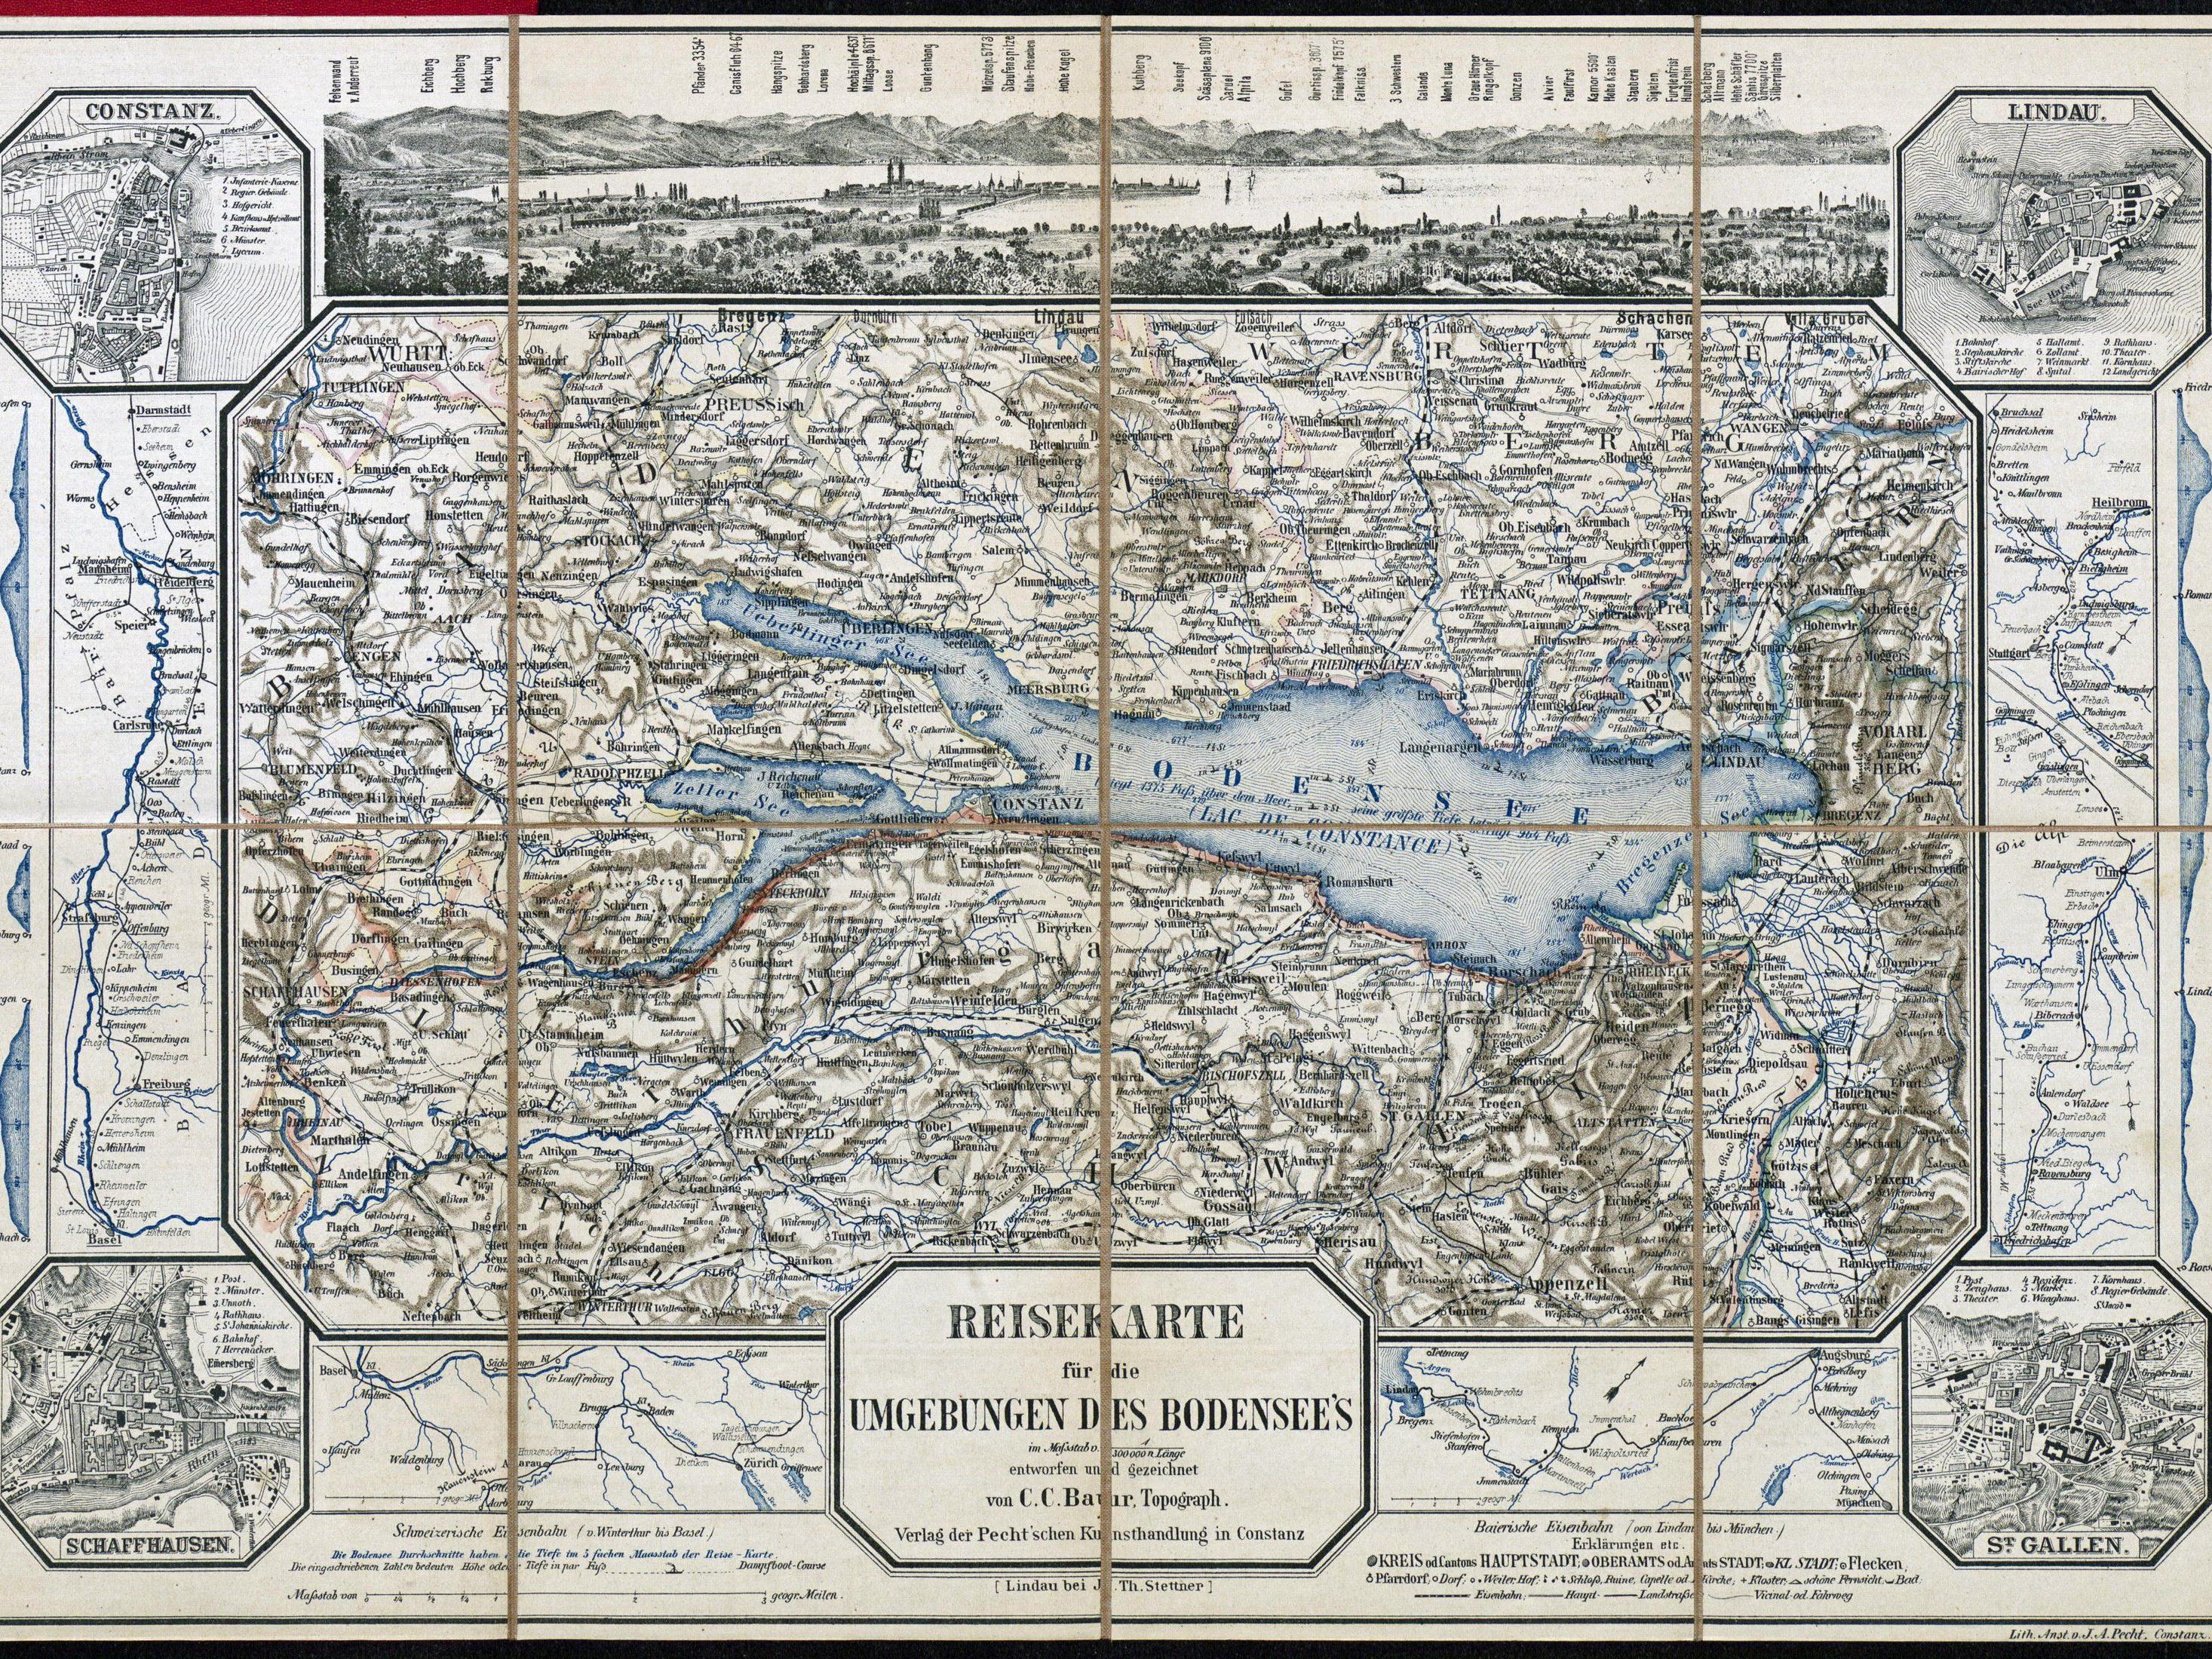 Reisekarte für die Umgebung des Bodensees, ca. 1865.